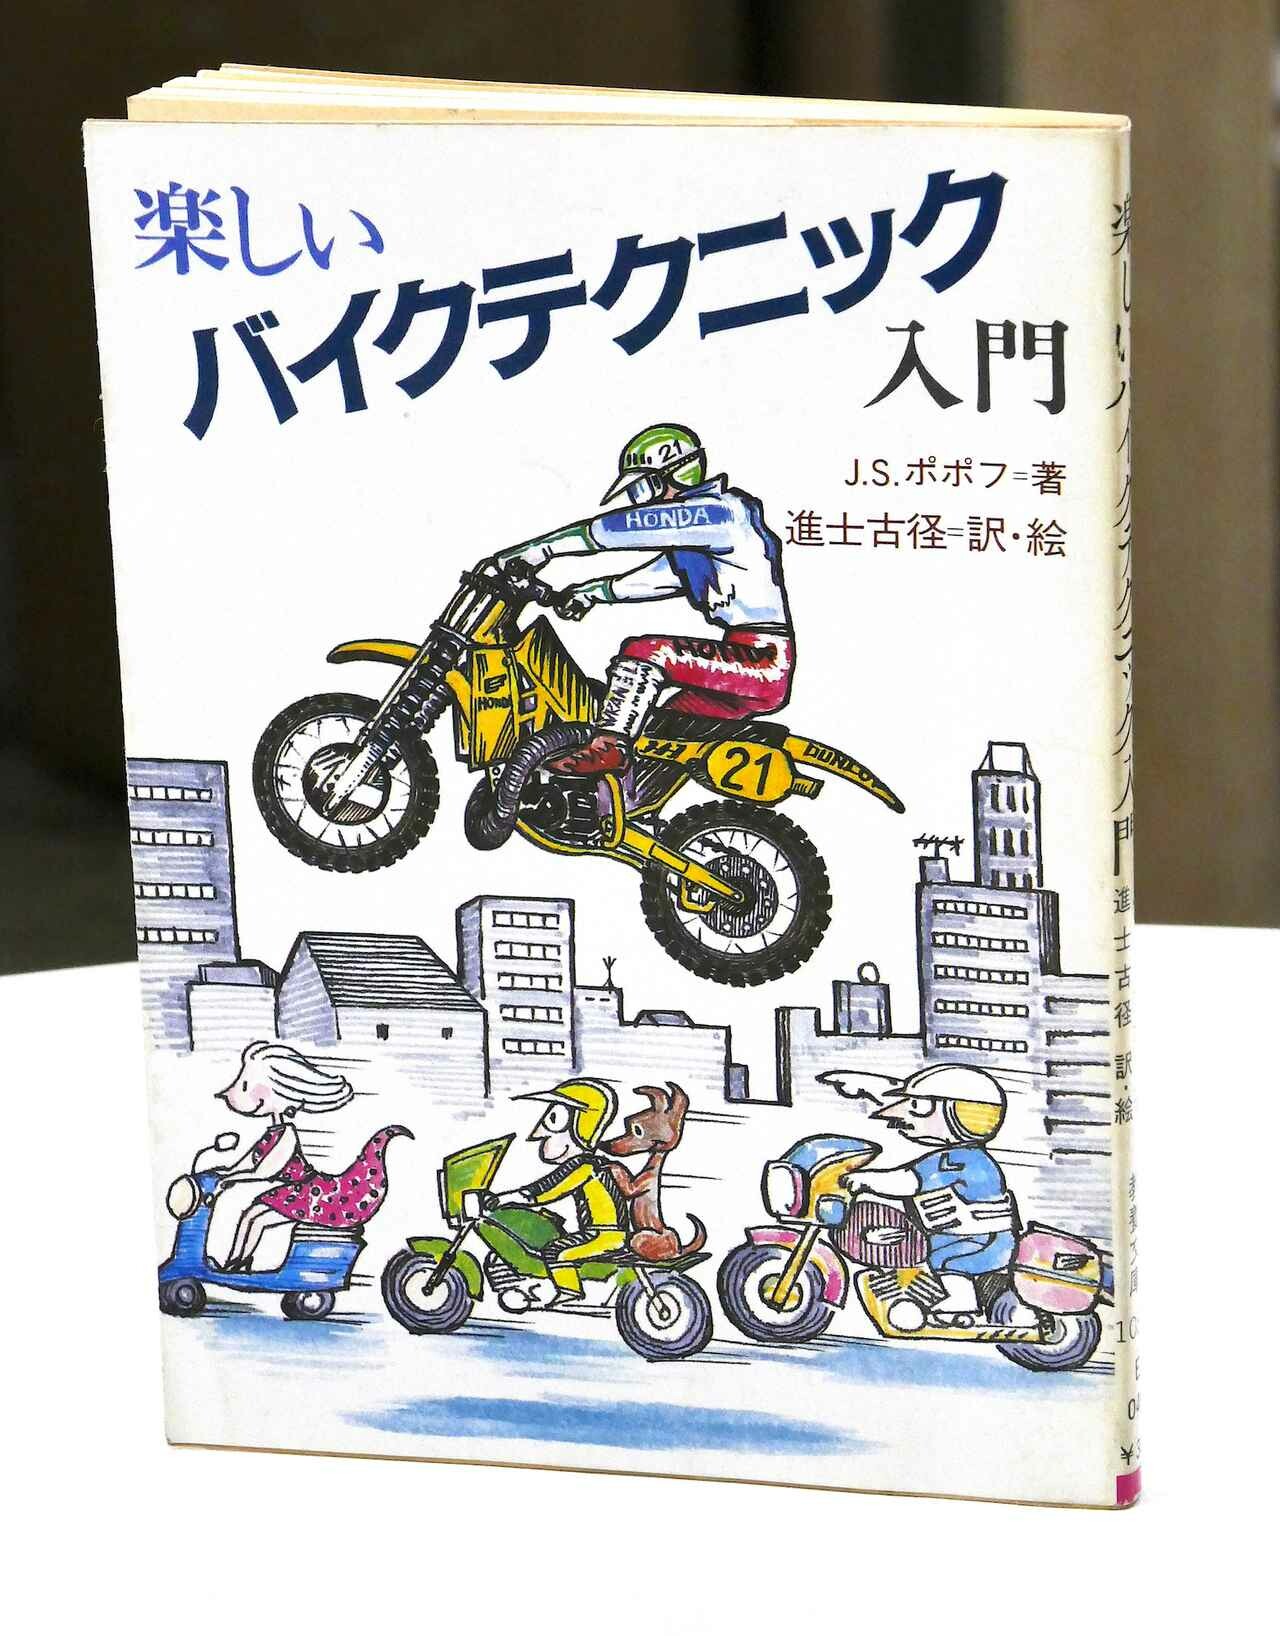 ソ連ライダーあるある本…じゃなくて冒険の旅のための1冊？　J・S・ポポフ「楽しいバイクテクニック入門」